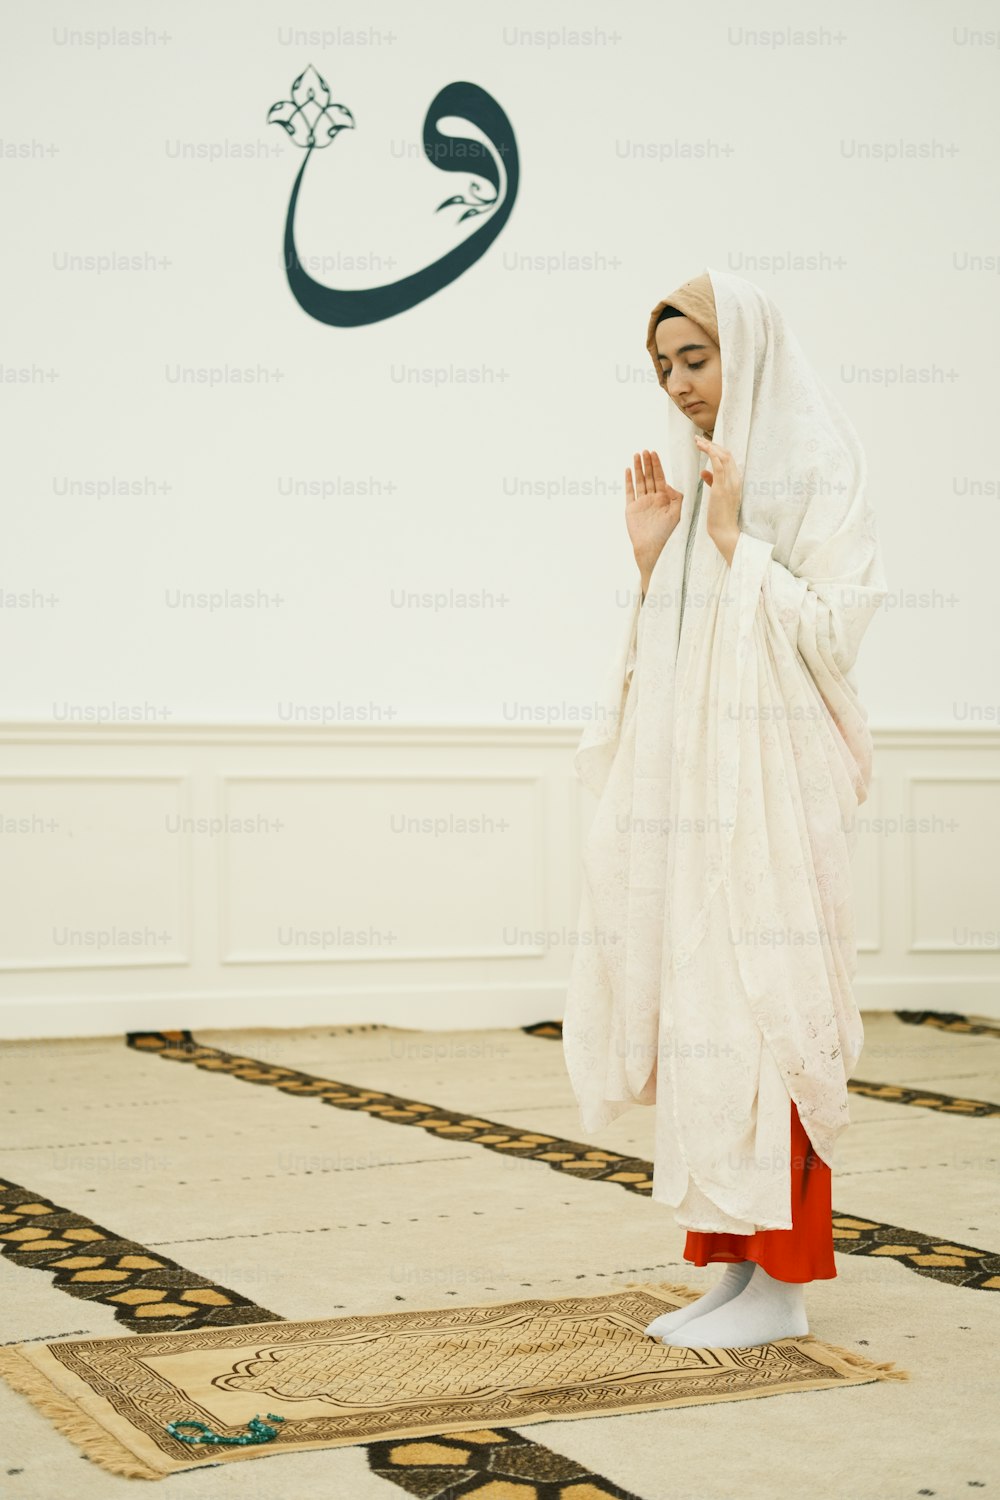 Una mujer con un vestido blanco de pie sobre una alfombra